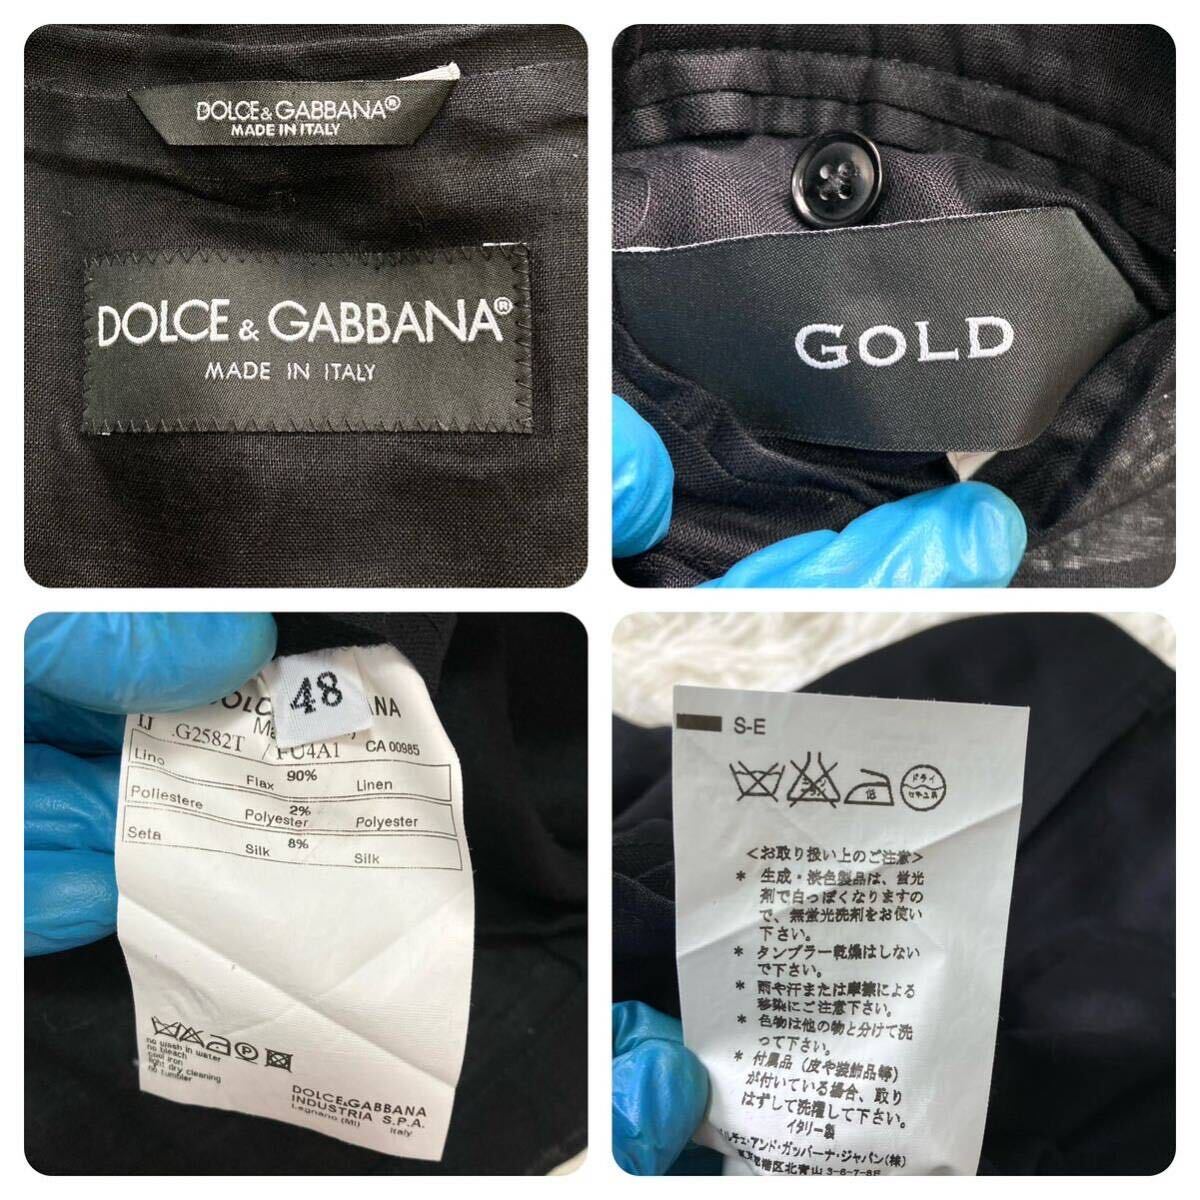  прекрасный товар L DOLCE&GABBANA Dolce & Gabbana tailored jacket GOLDlinen шелк блейзер 1B Anne темно синий чёрный черный мужской 48